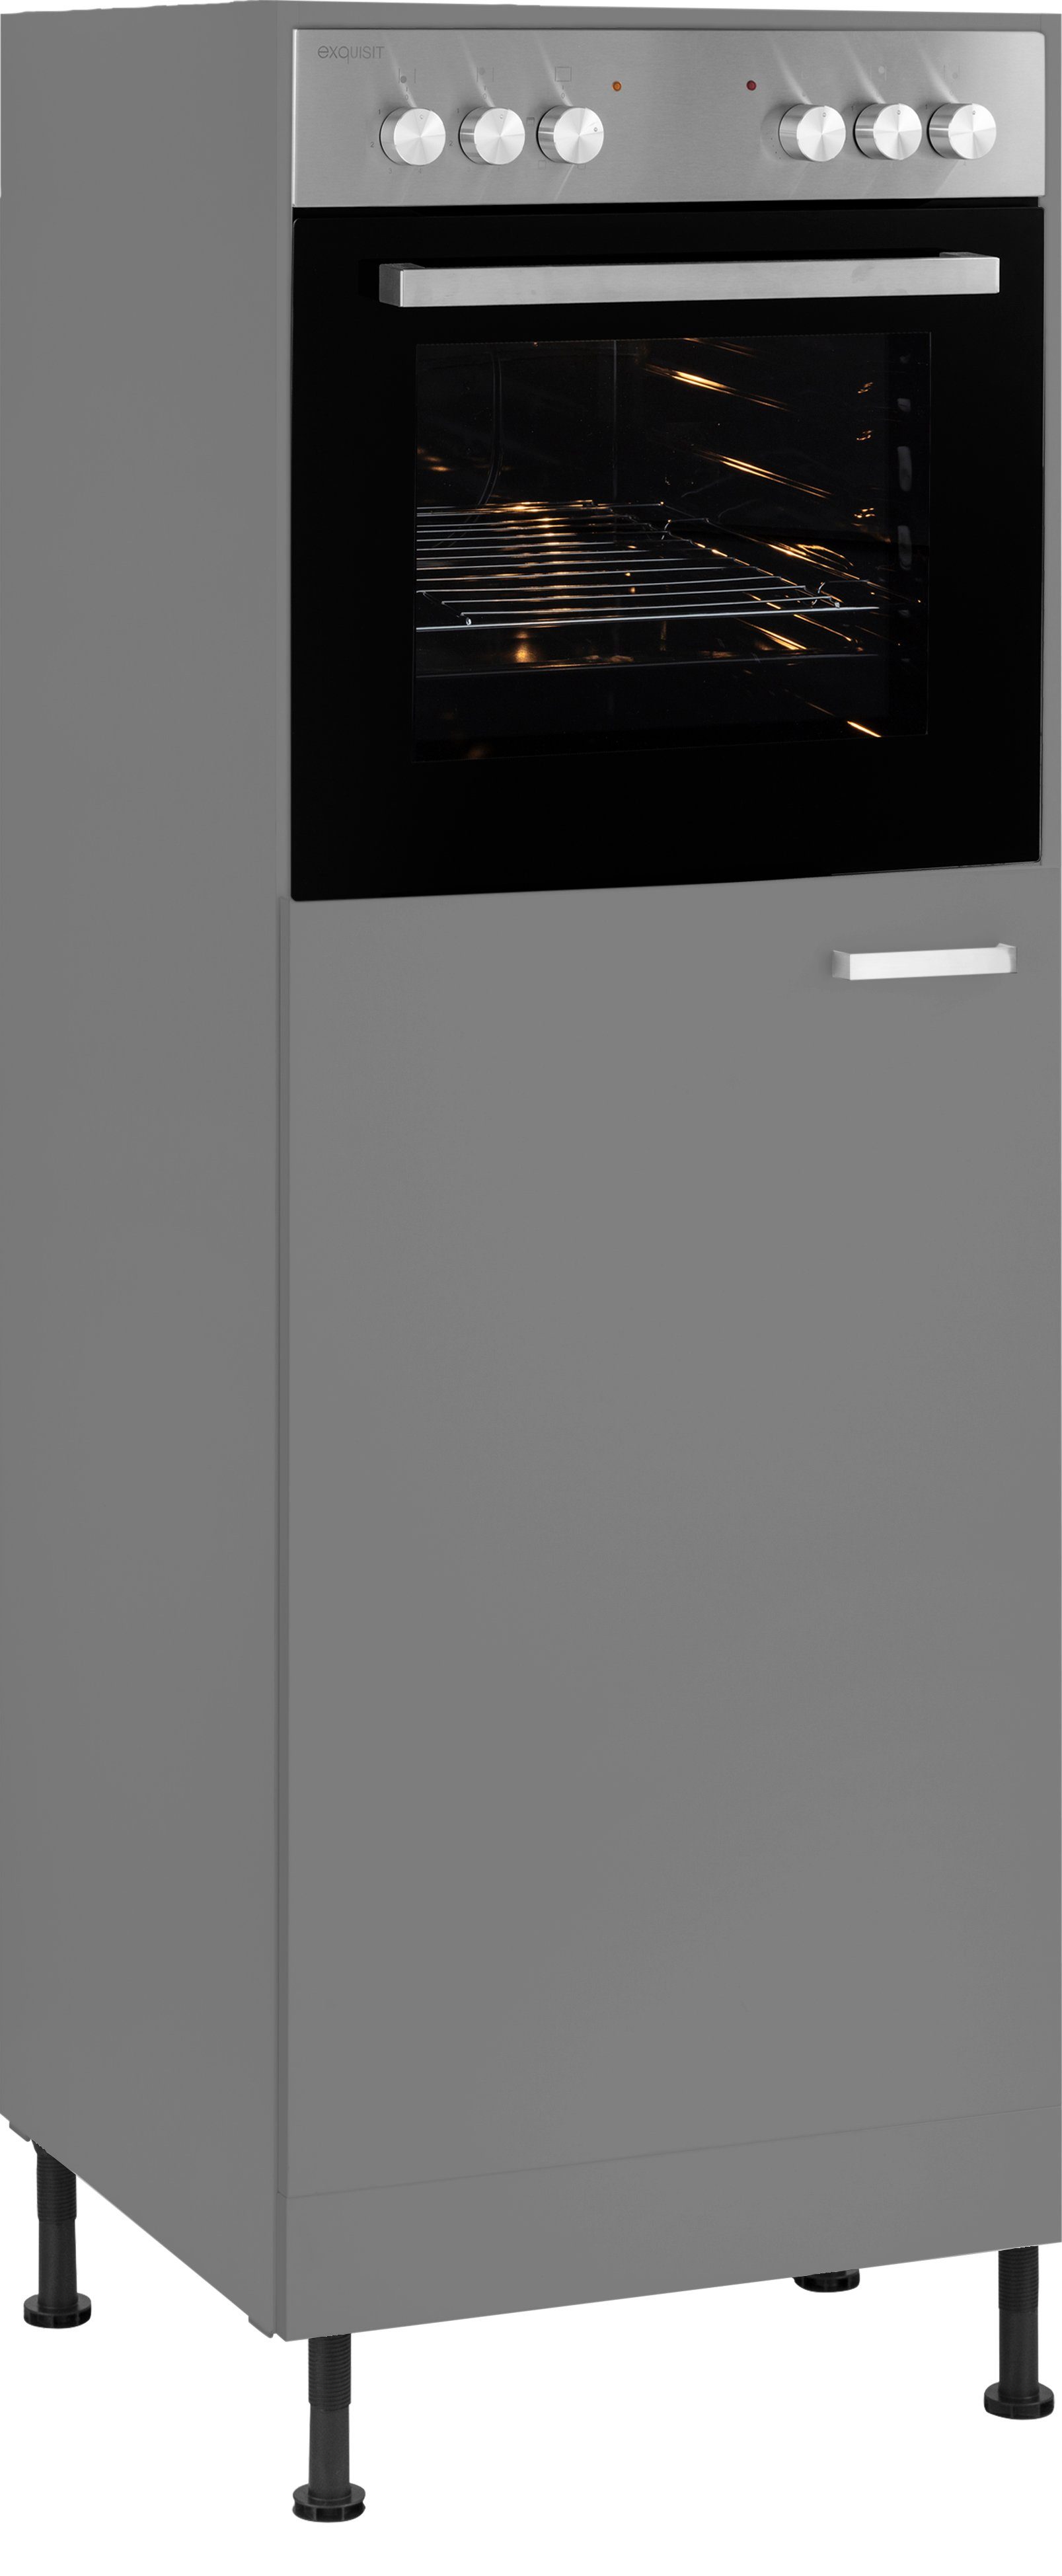 OPTIFIT Backofen/Kühlumbauschrank Parma Breite 60 cm basaltgrau | basaltgrau | Kühlschrankumbauschränke